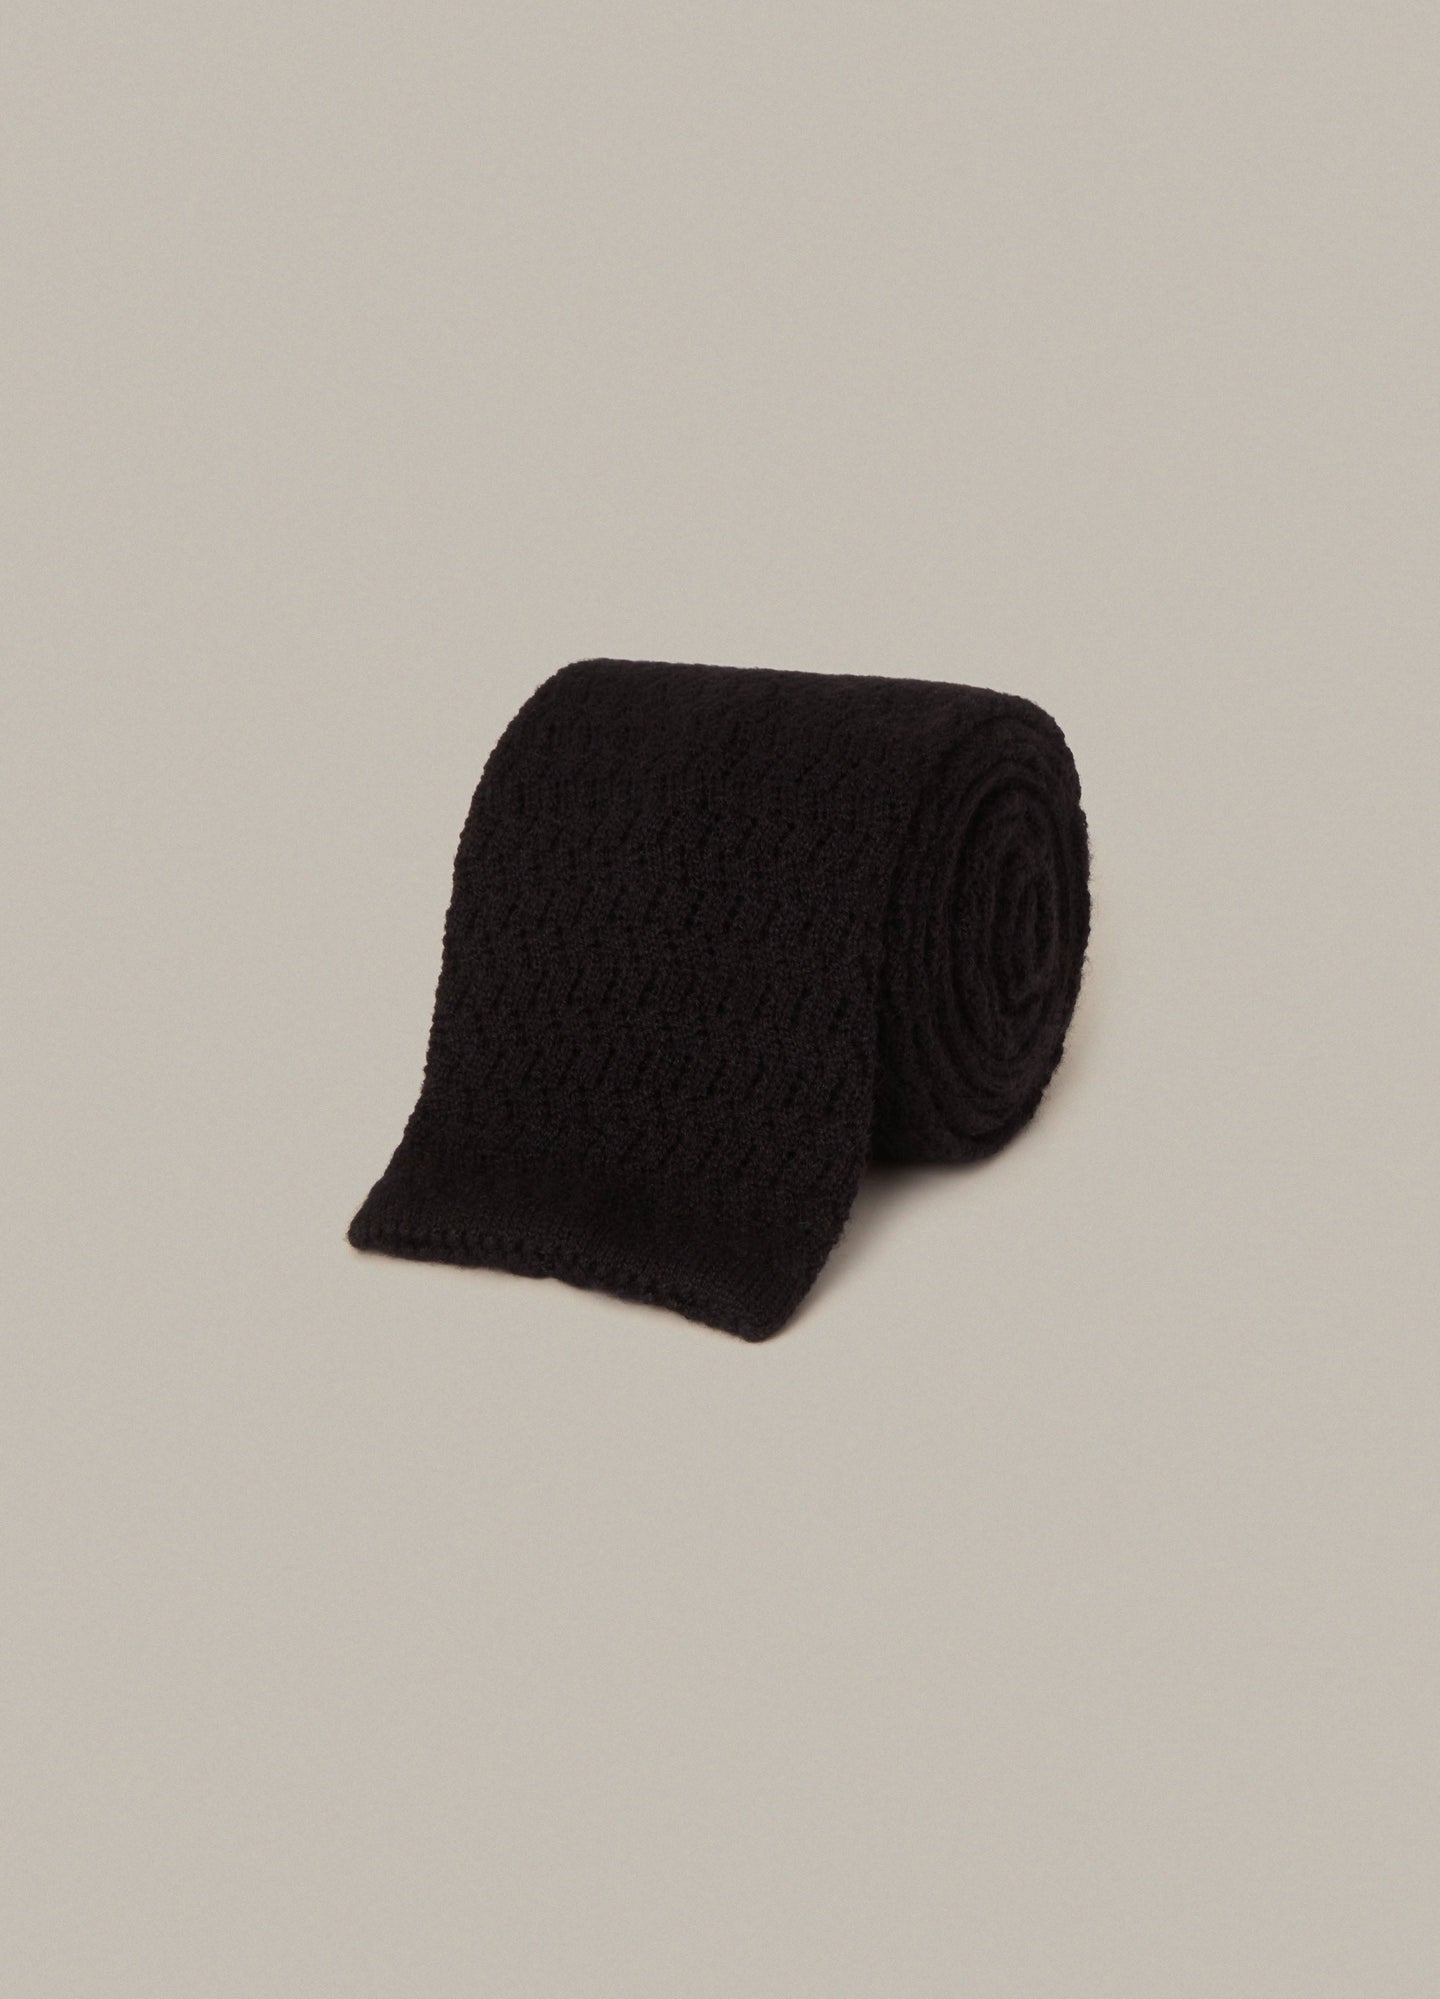 Knitted Zigzag Tie - Black | Berg & Berg